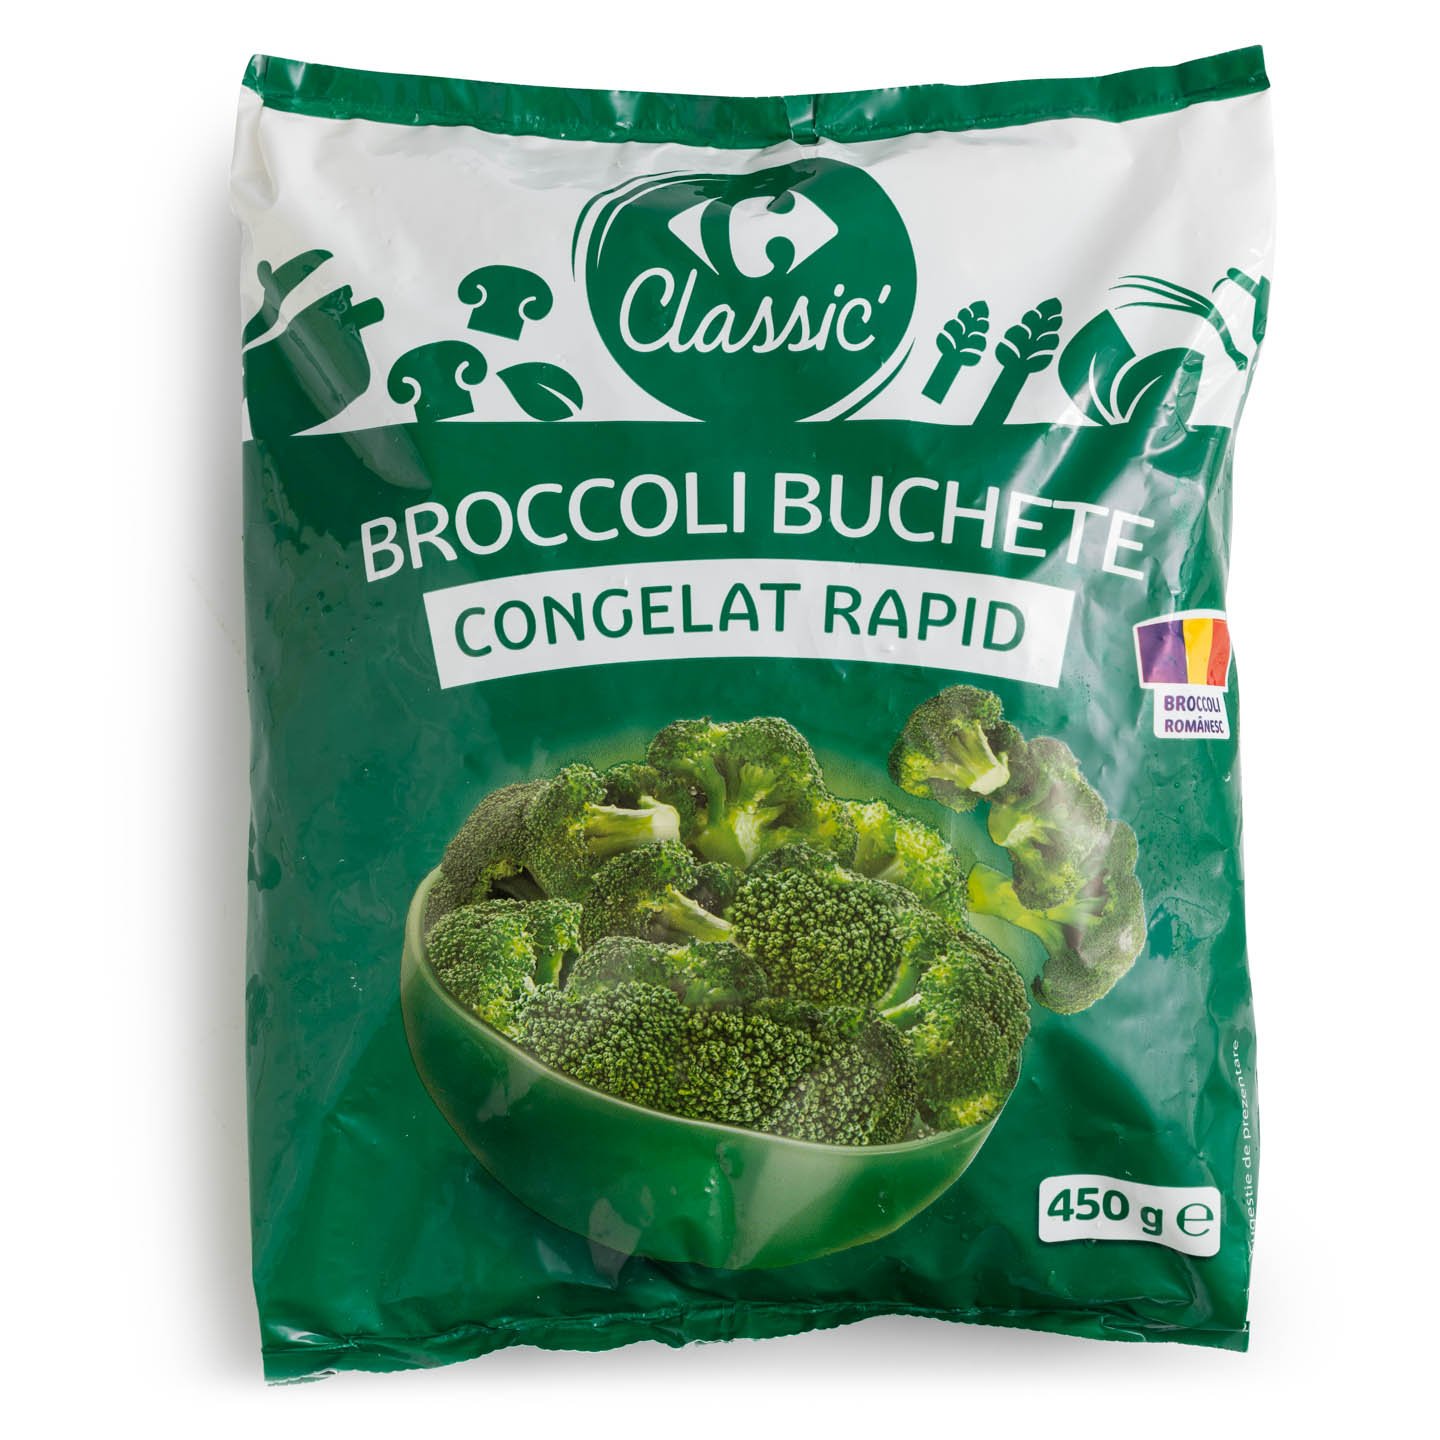 Broccoli buchete Carrefour Classic 450g